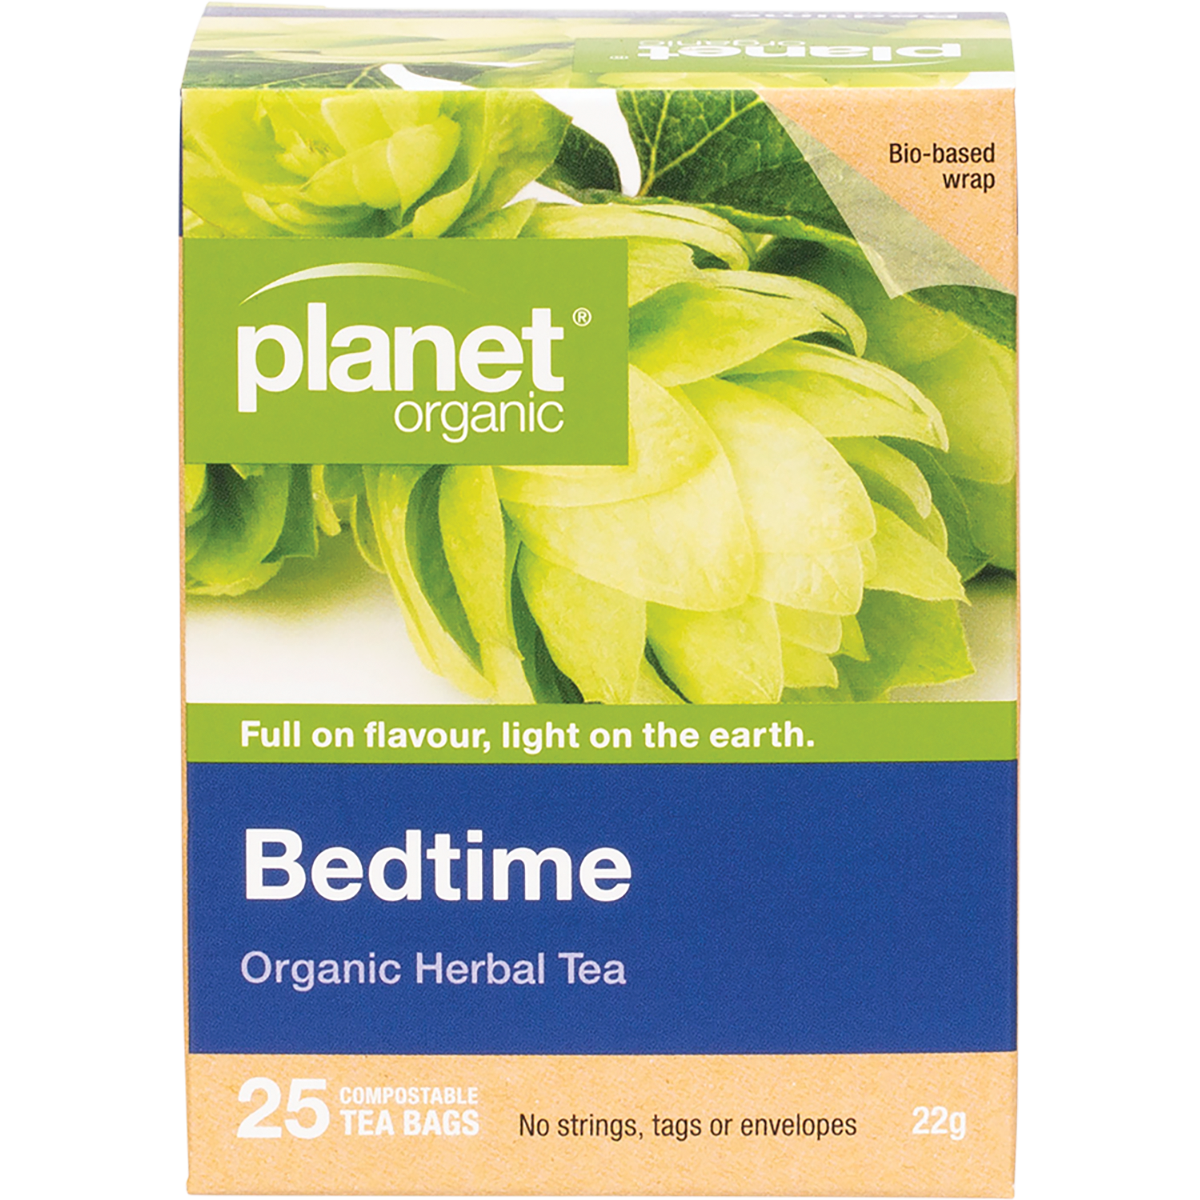 planet organic bedtime organic herbal tea bags 